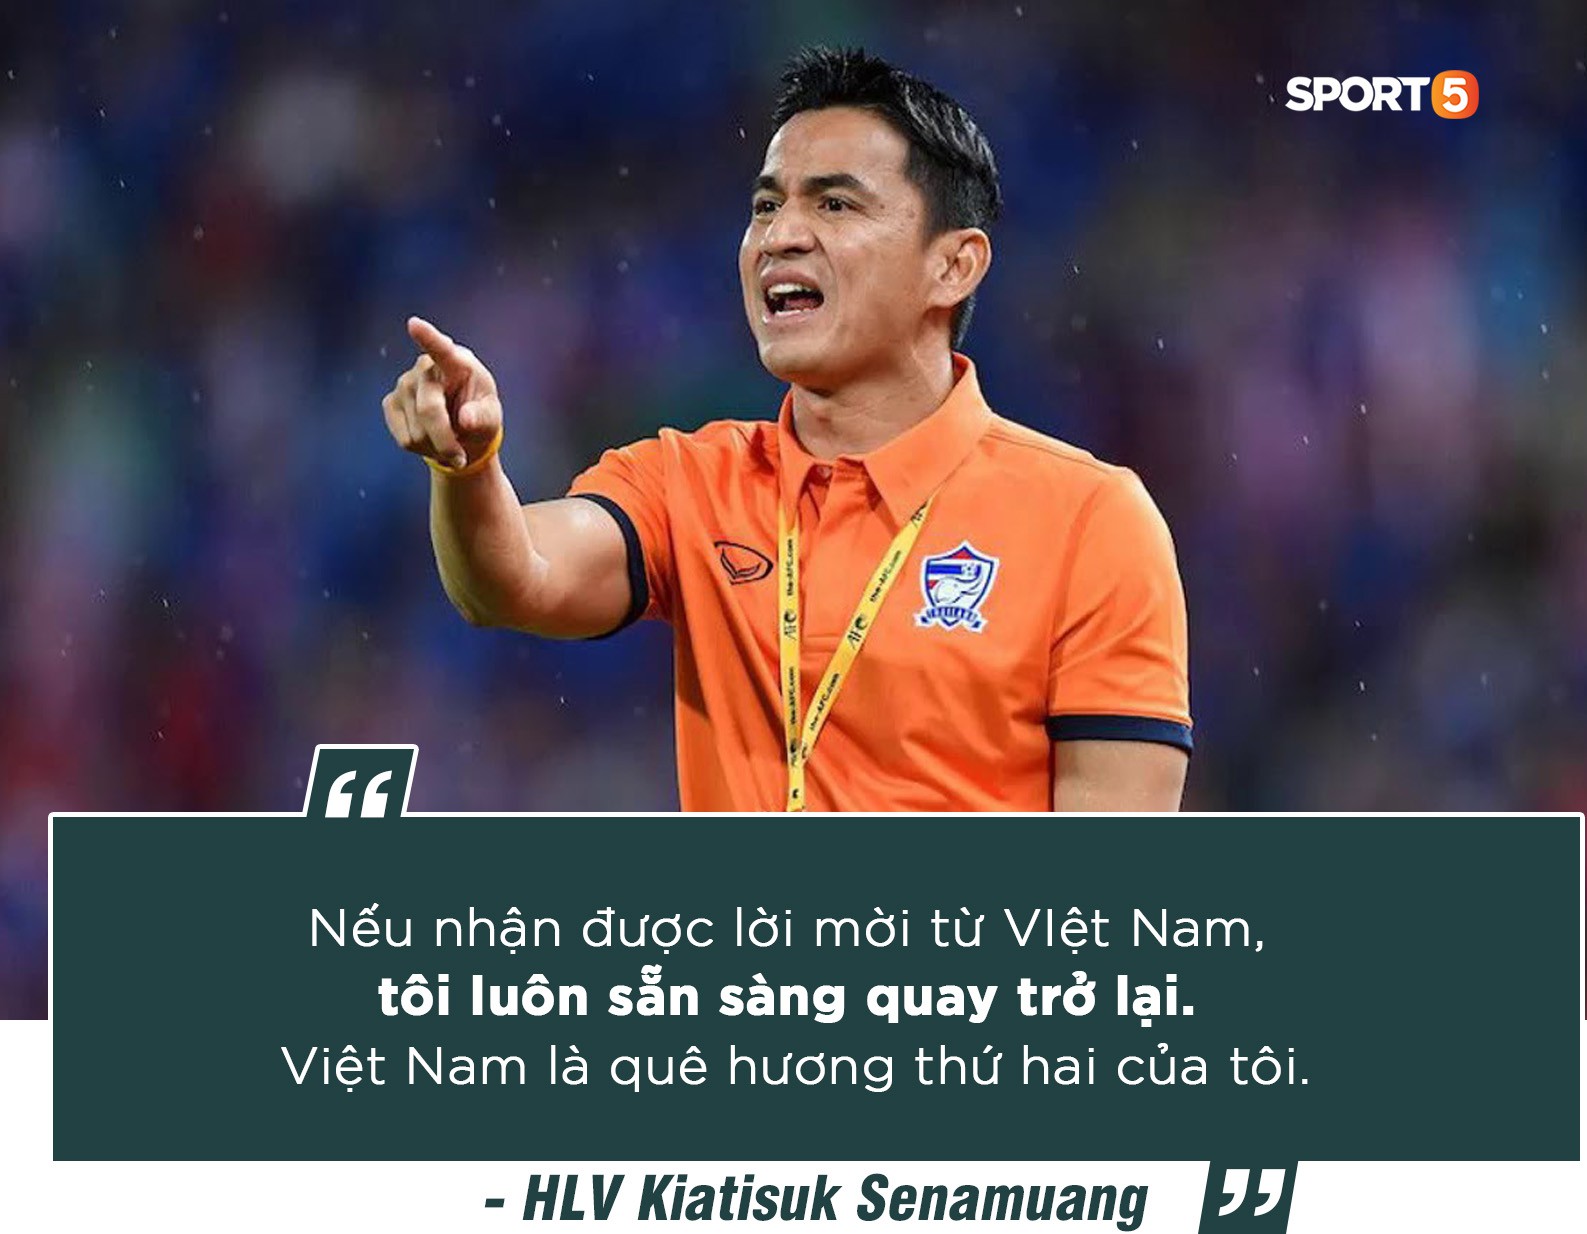 Huyền thoại bóng đá Thái Lan Kiatisak: “Việt Nam hiện tại quá hay, 99% sẽ vô địch AFF Cup 2018”